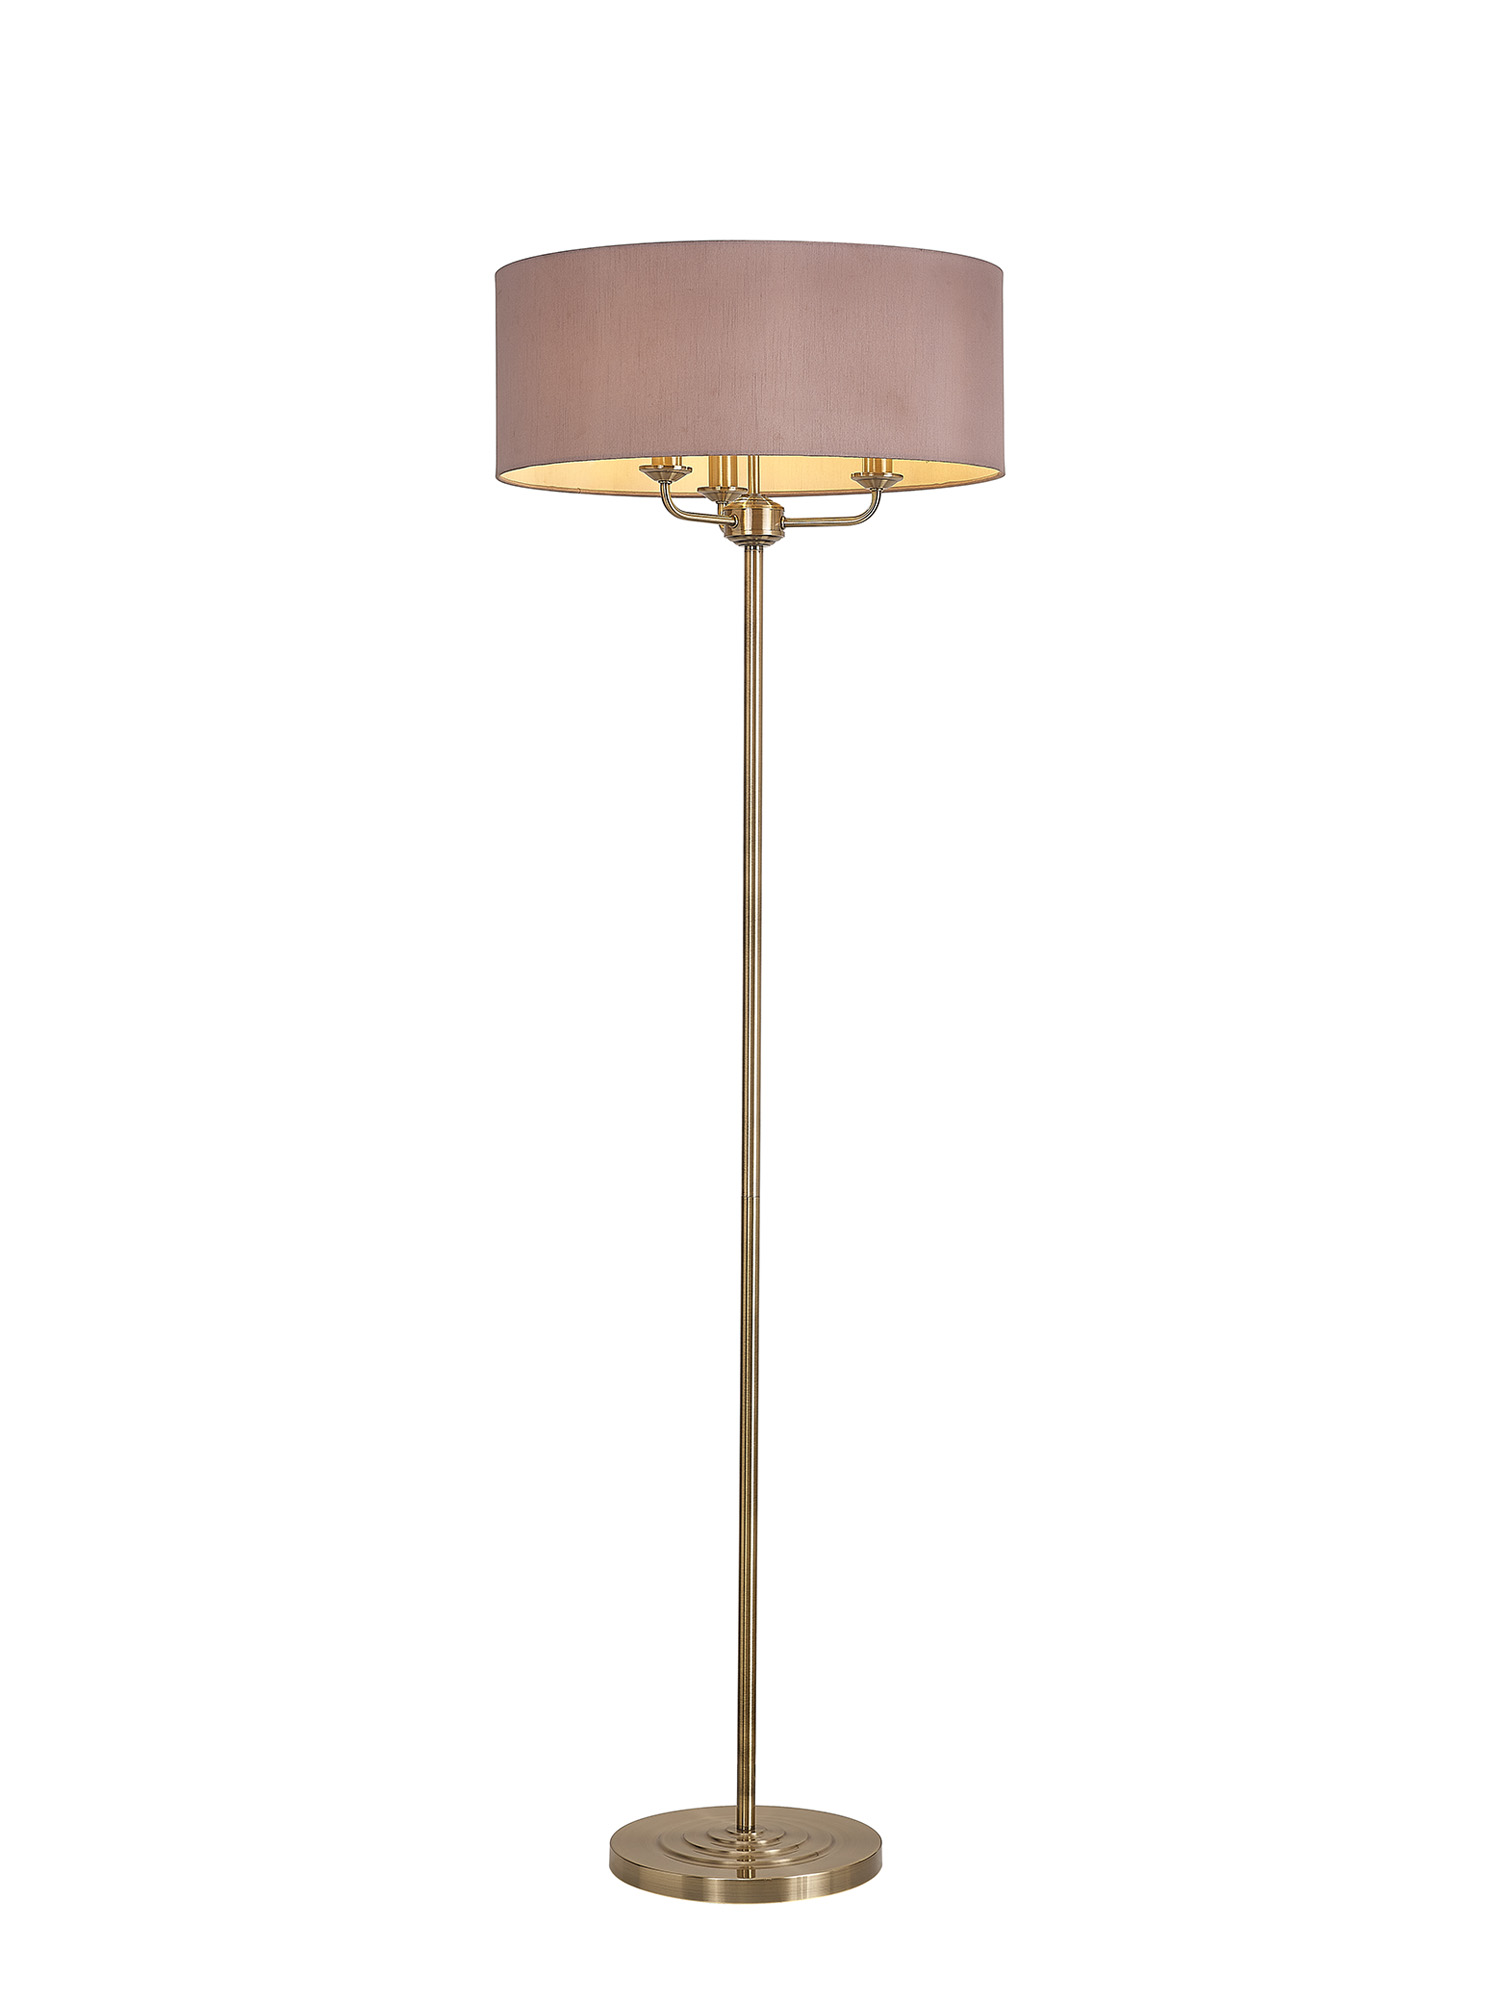 DK0918  Banyan 45cm 3 Light Floor Lamp Antique Brass; Taupe